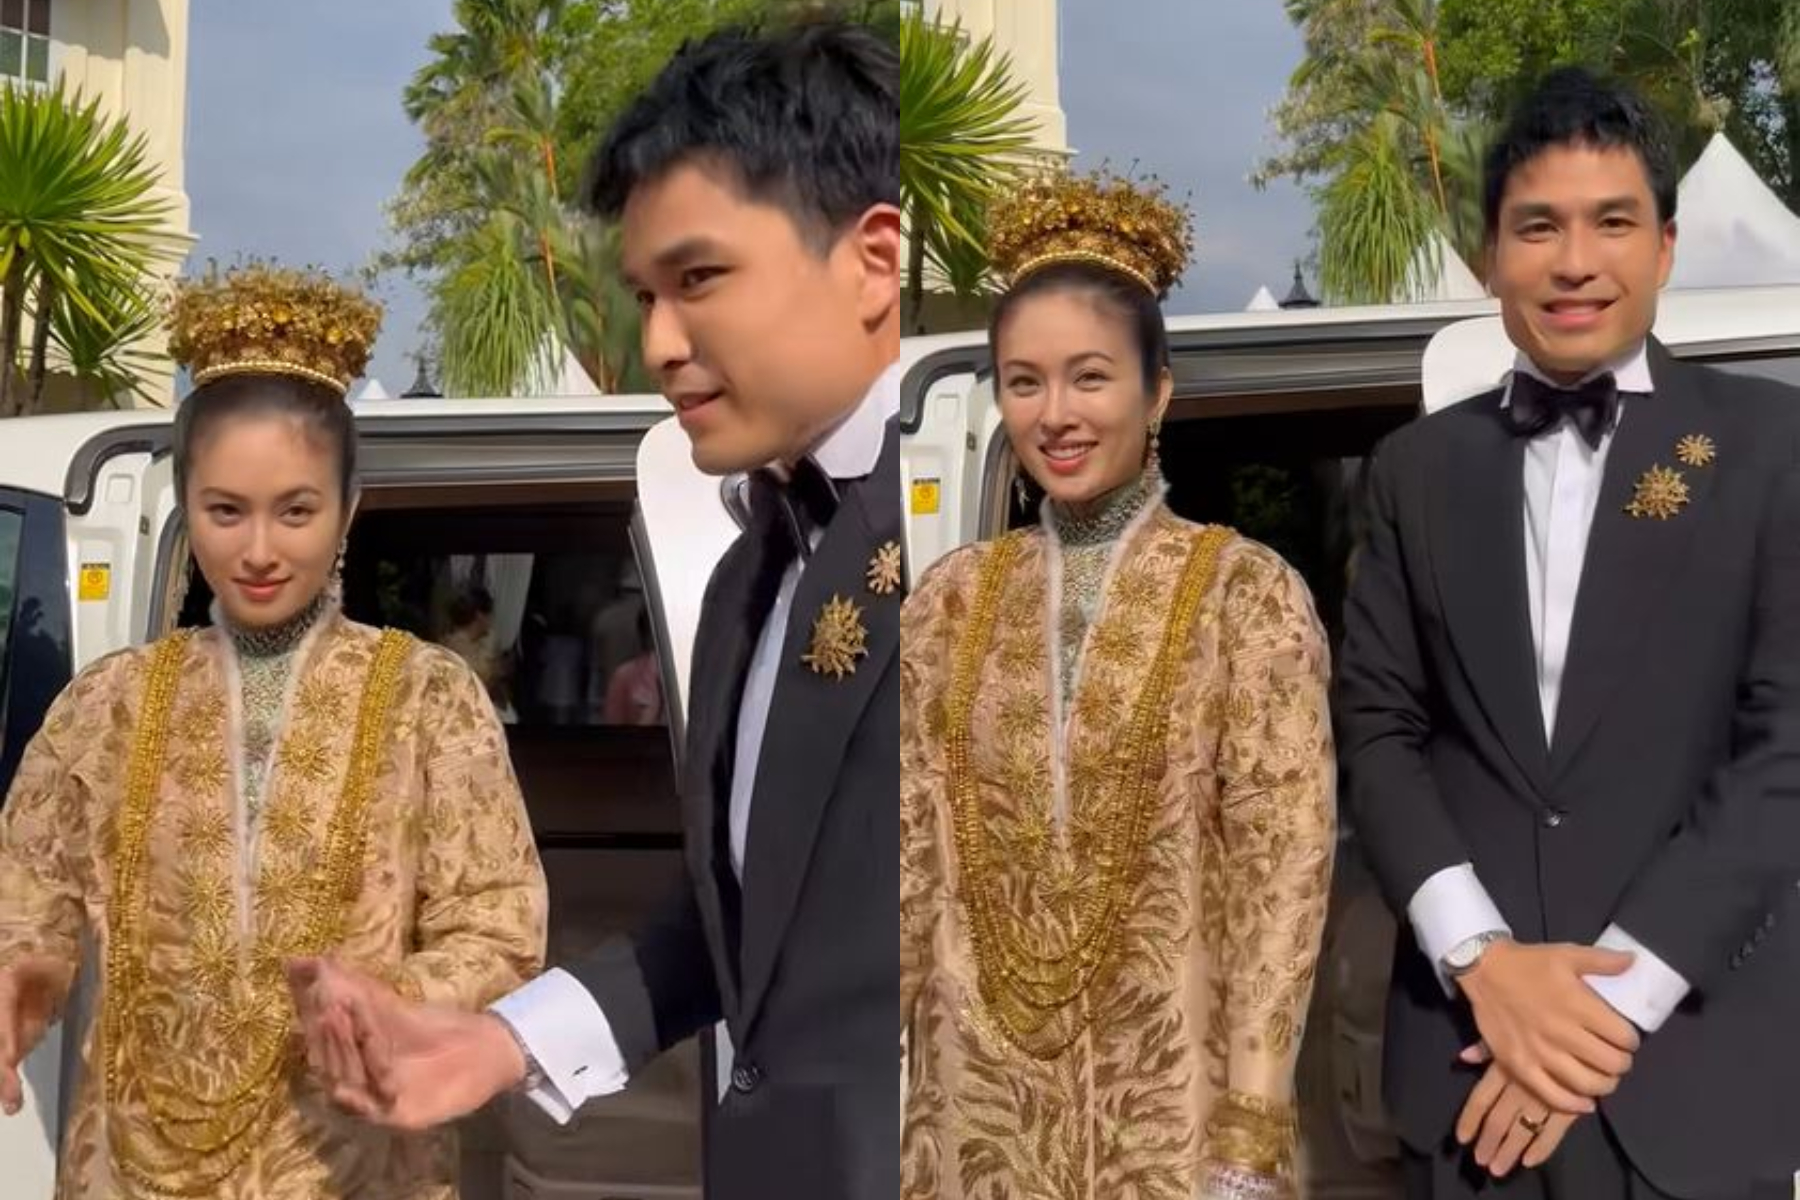 Hình ảnh đầu tiên trong hôn lễ của mỹ nhân chuyển giới Nong Poy: Cô dâu đội vương miện vàng cùng chú rể điển trai chính thức xuất hiện - Ảnh 3.